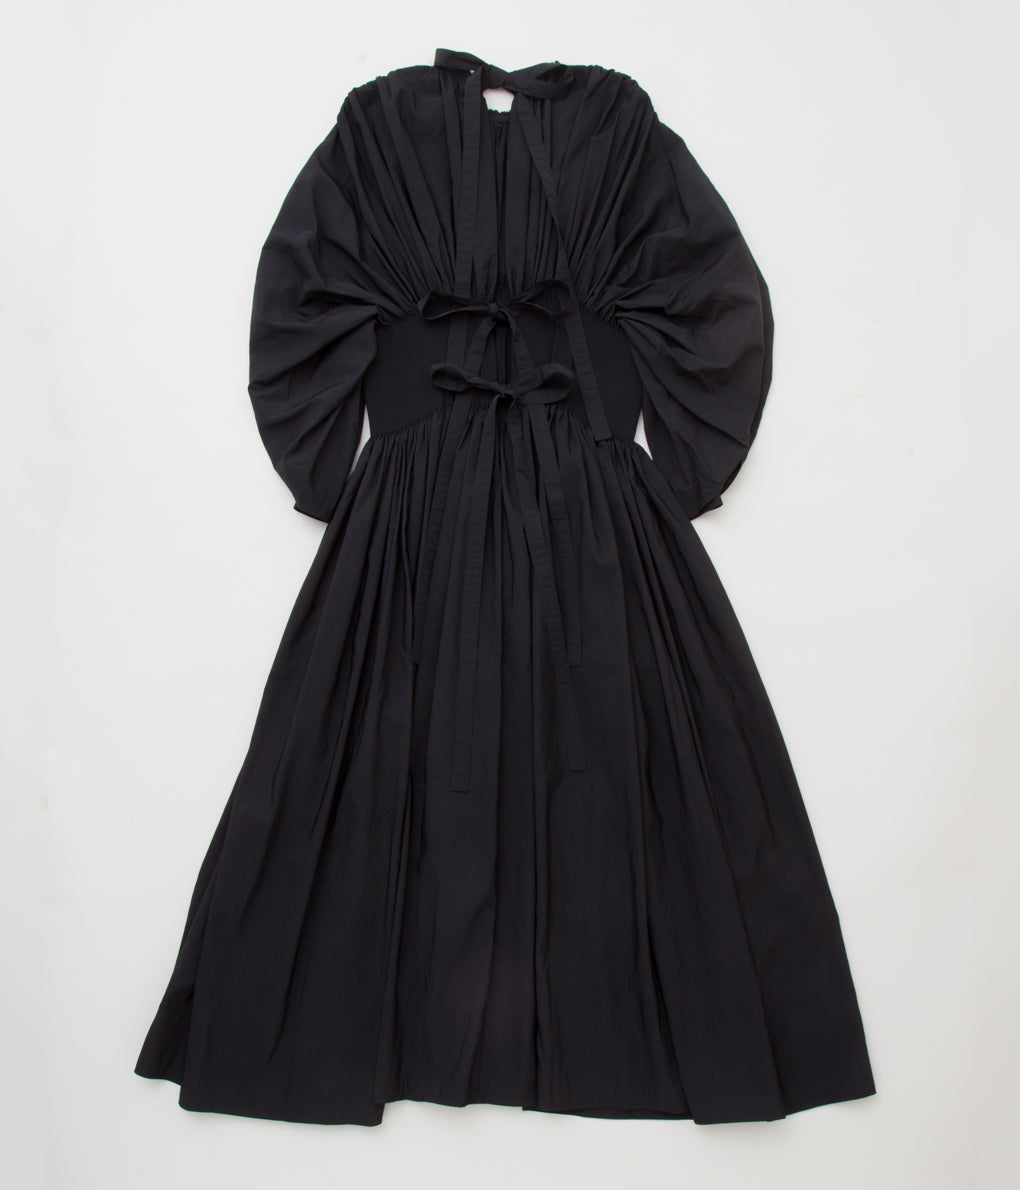 RENATA BRENHA "BANDONE NON DRESS" (BLACK)